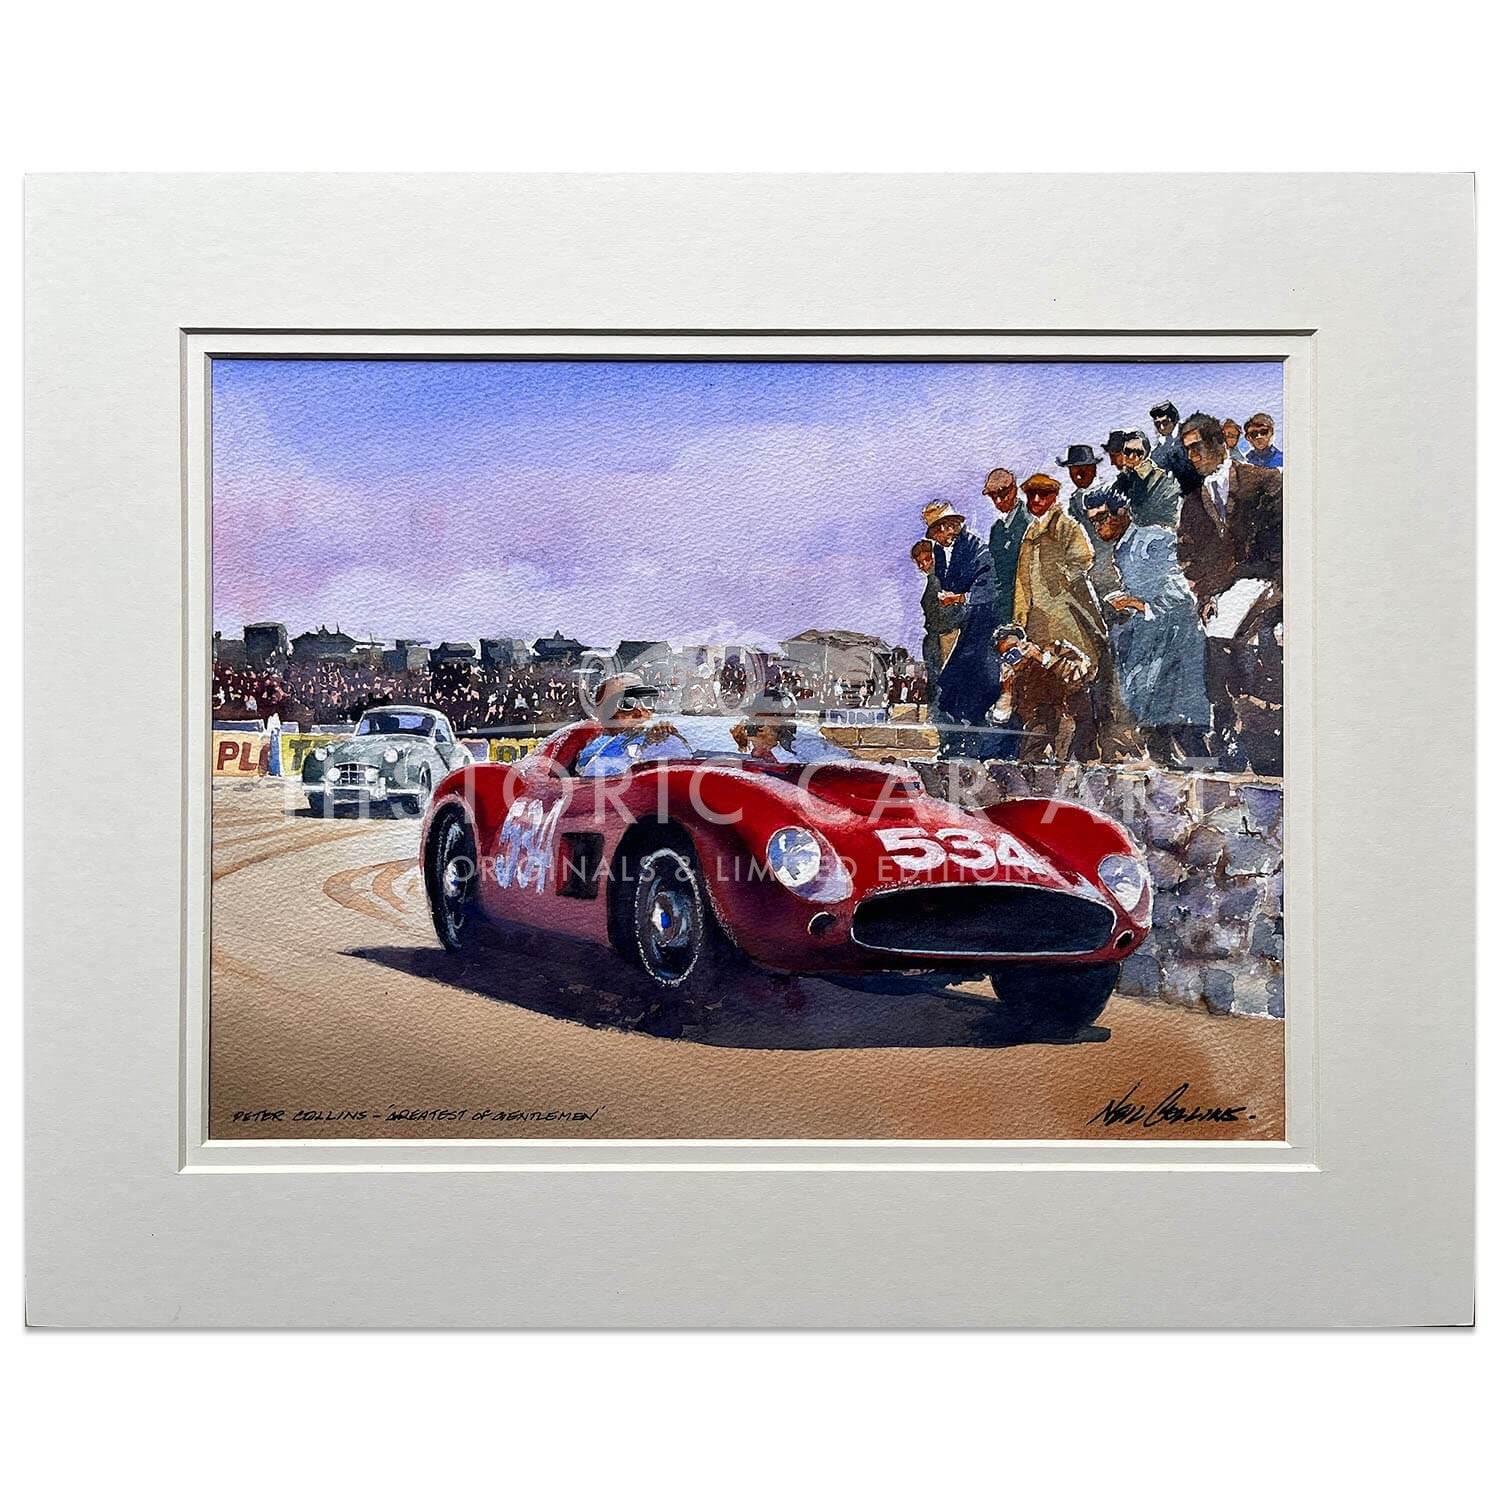 The Greatest of Gentlemen | Mille Miglia 1957 | Peter Collins | Artwork